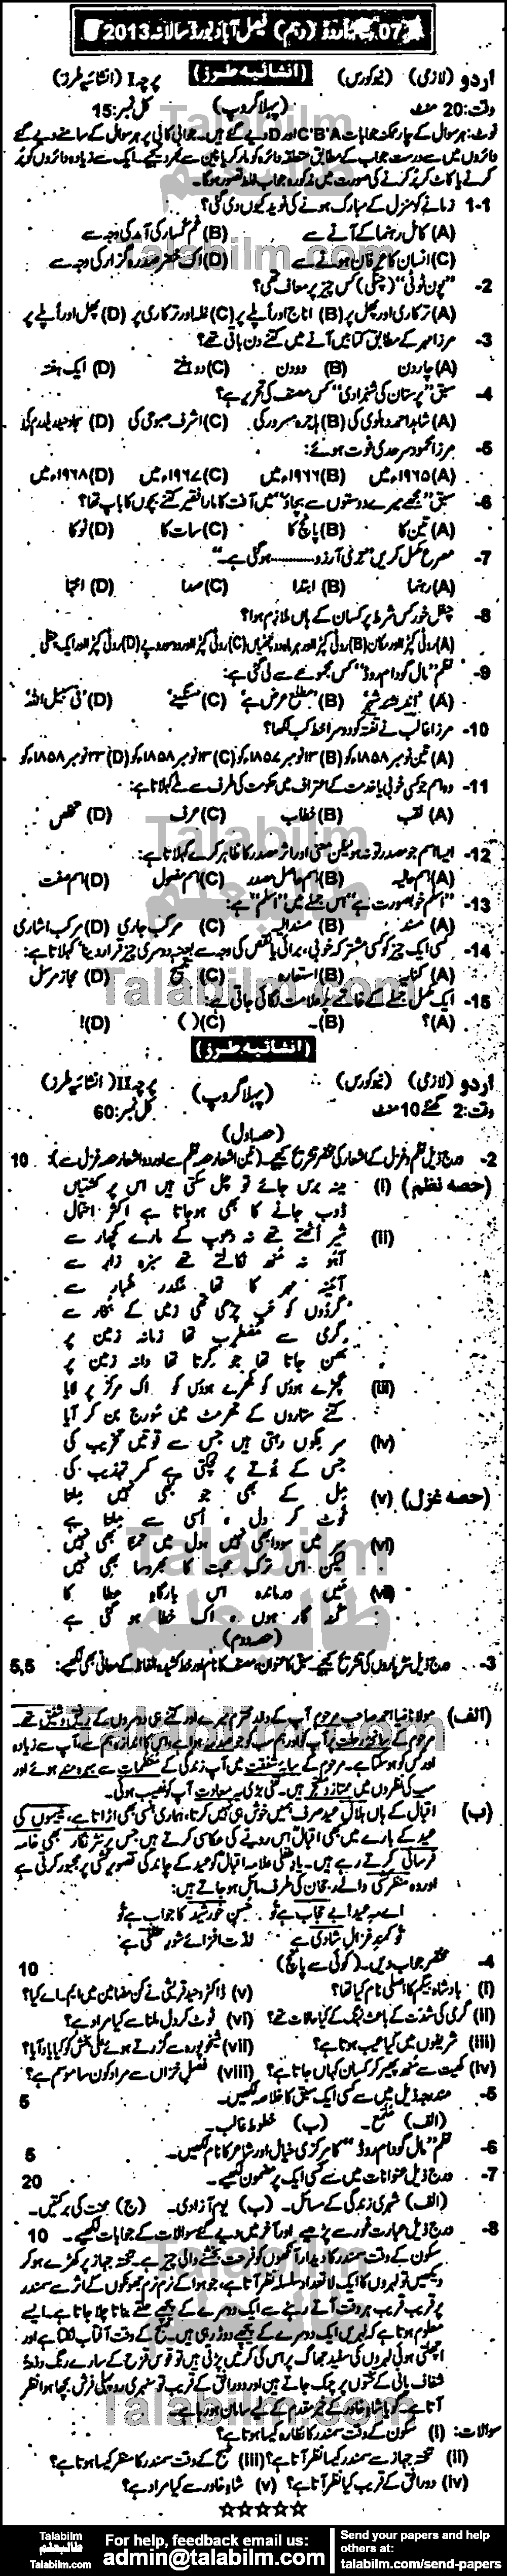 Urdu 0 past paper for Urdu Medium 2013 Group-I